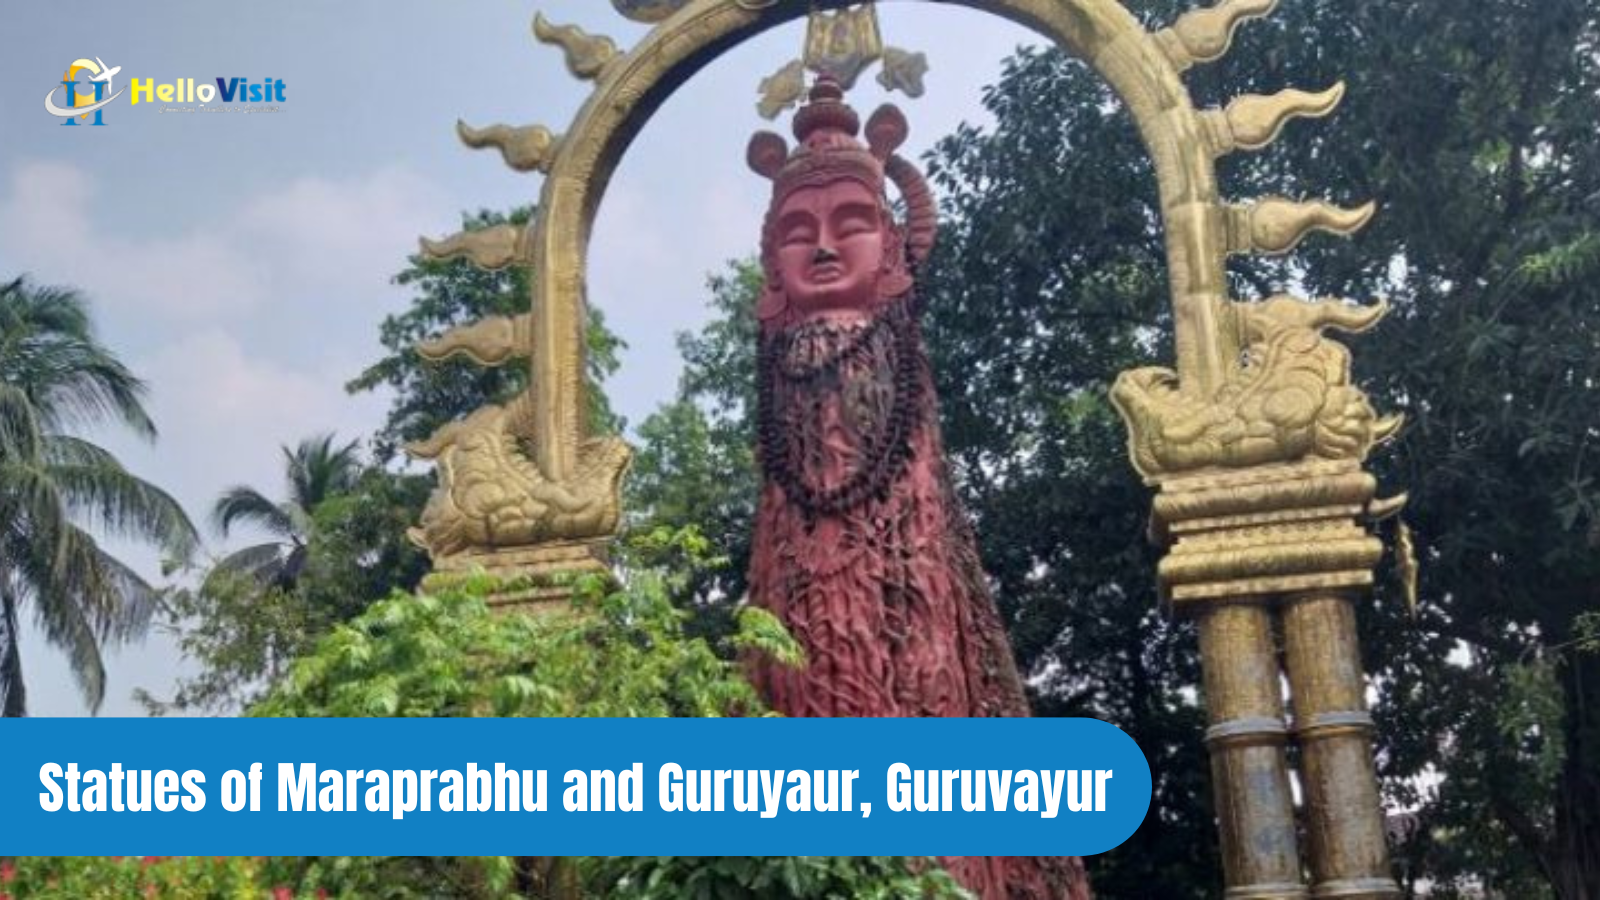 Statues of Maraprabhu and Guruyaur, Guruvayur